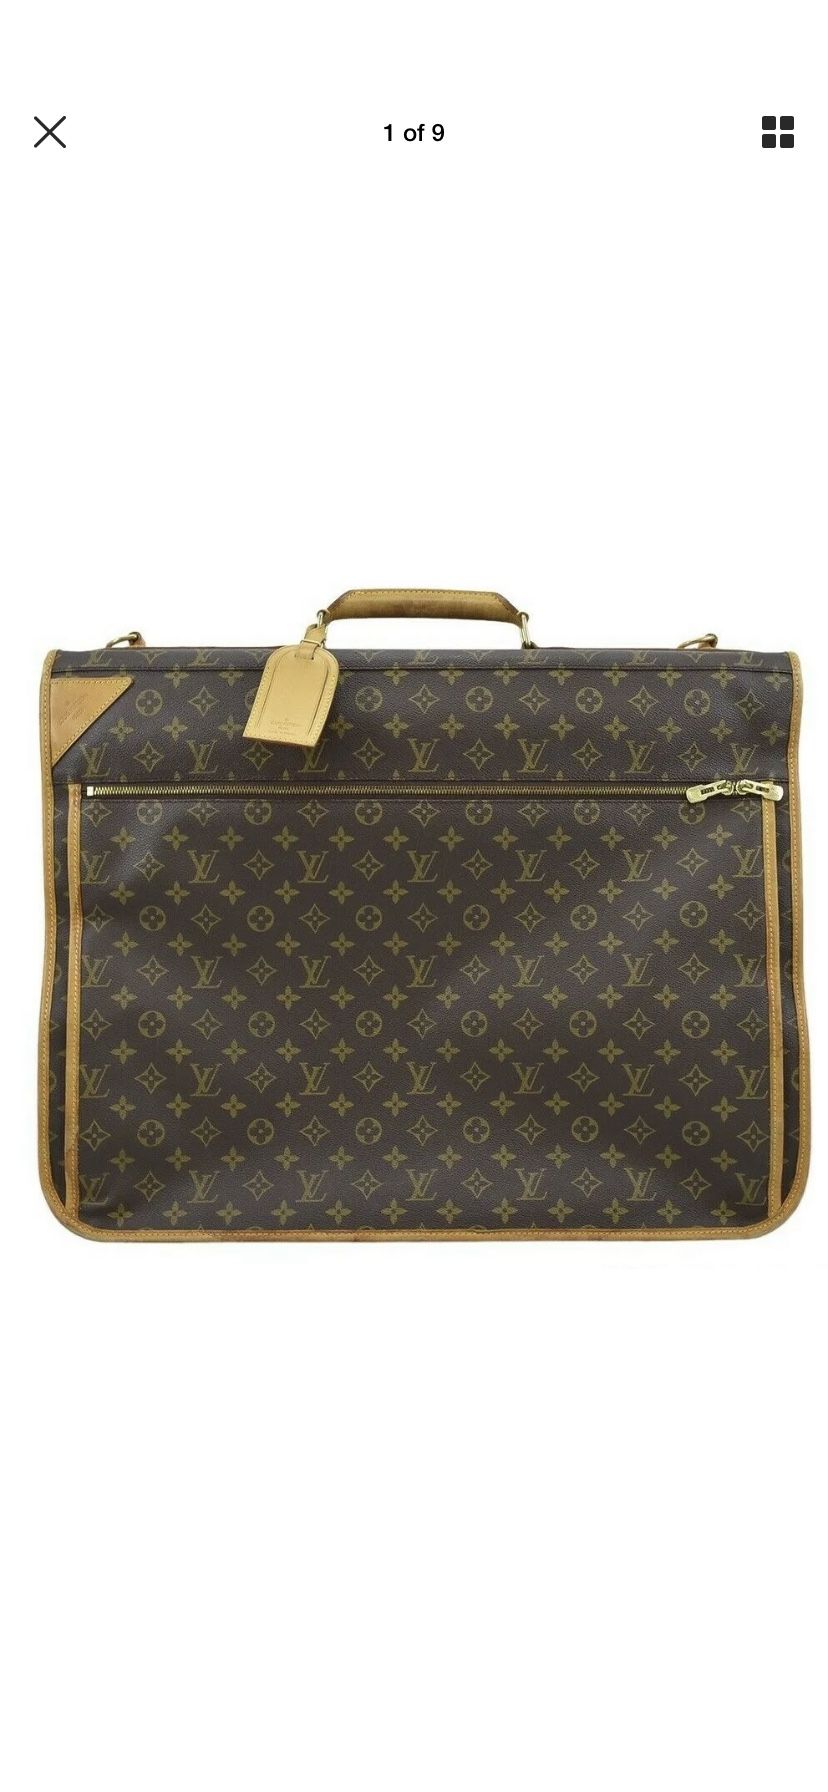 Louis Vuitton authentic garment travel carrier bag